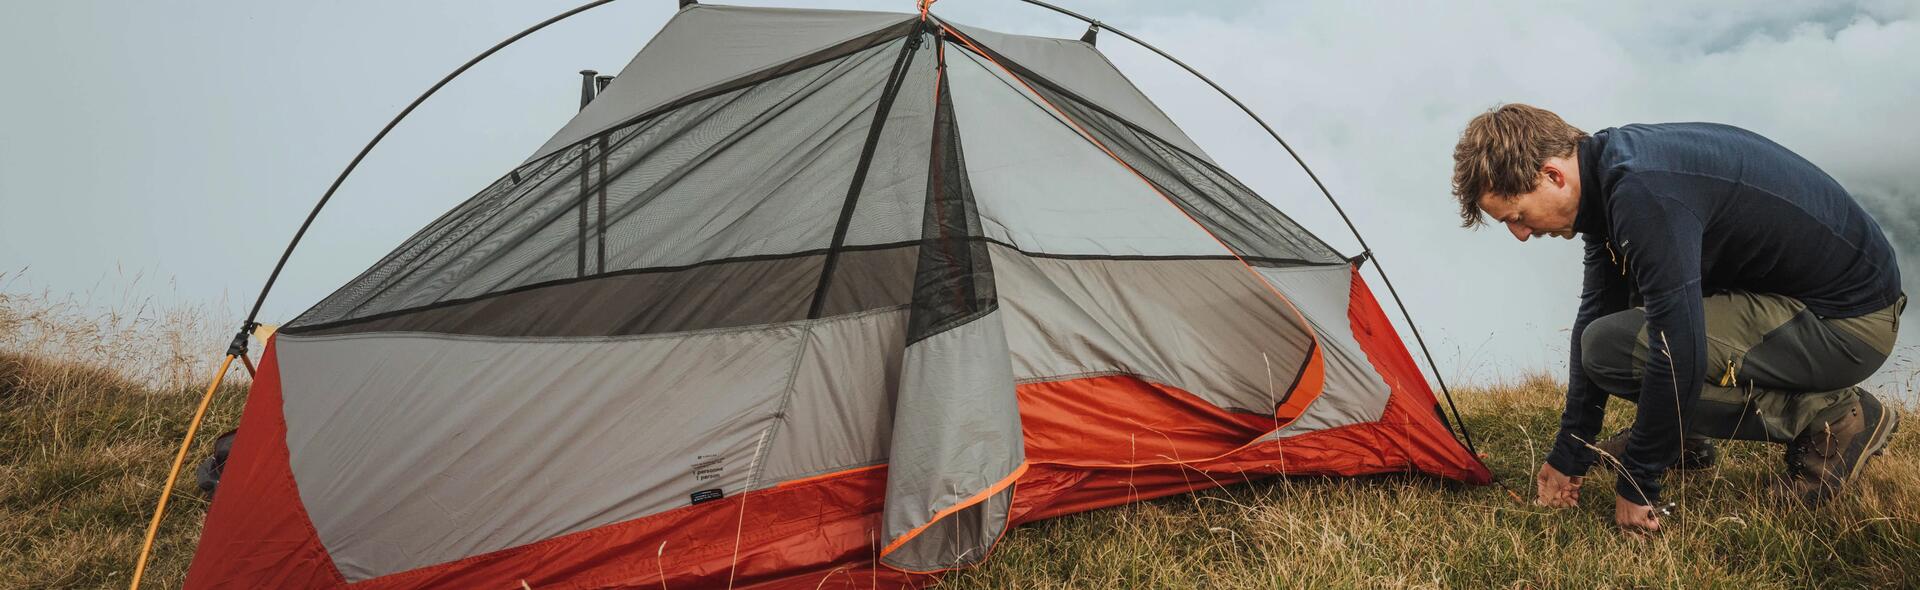 Comment vérifier que sa tente est en bon état avant de partir camper - titre